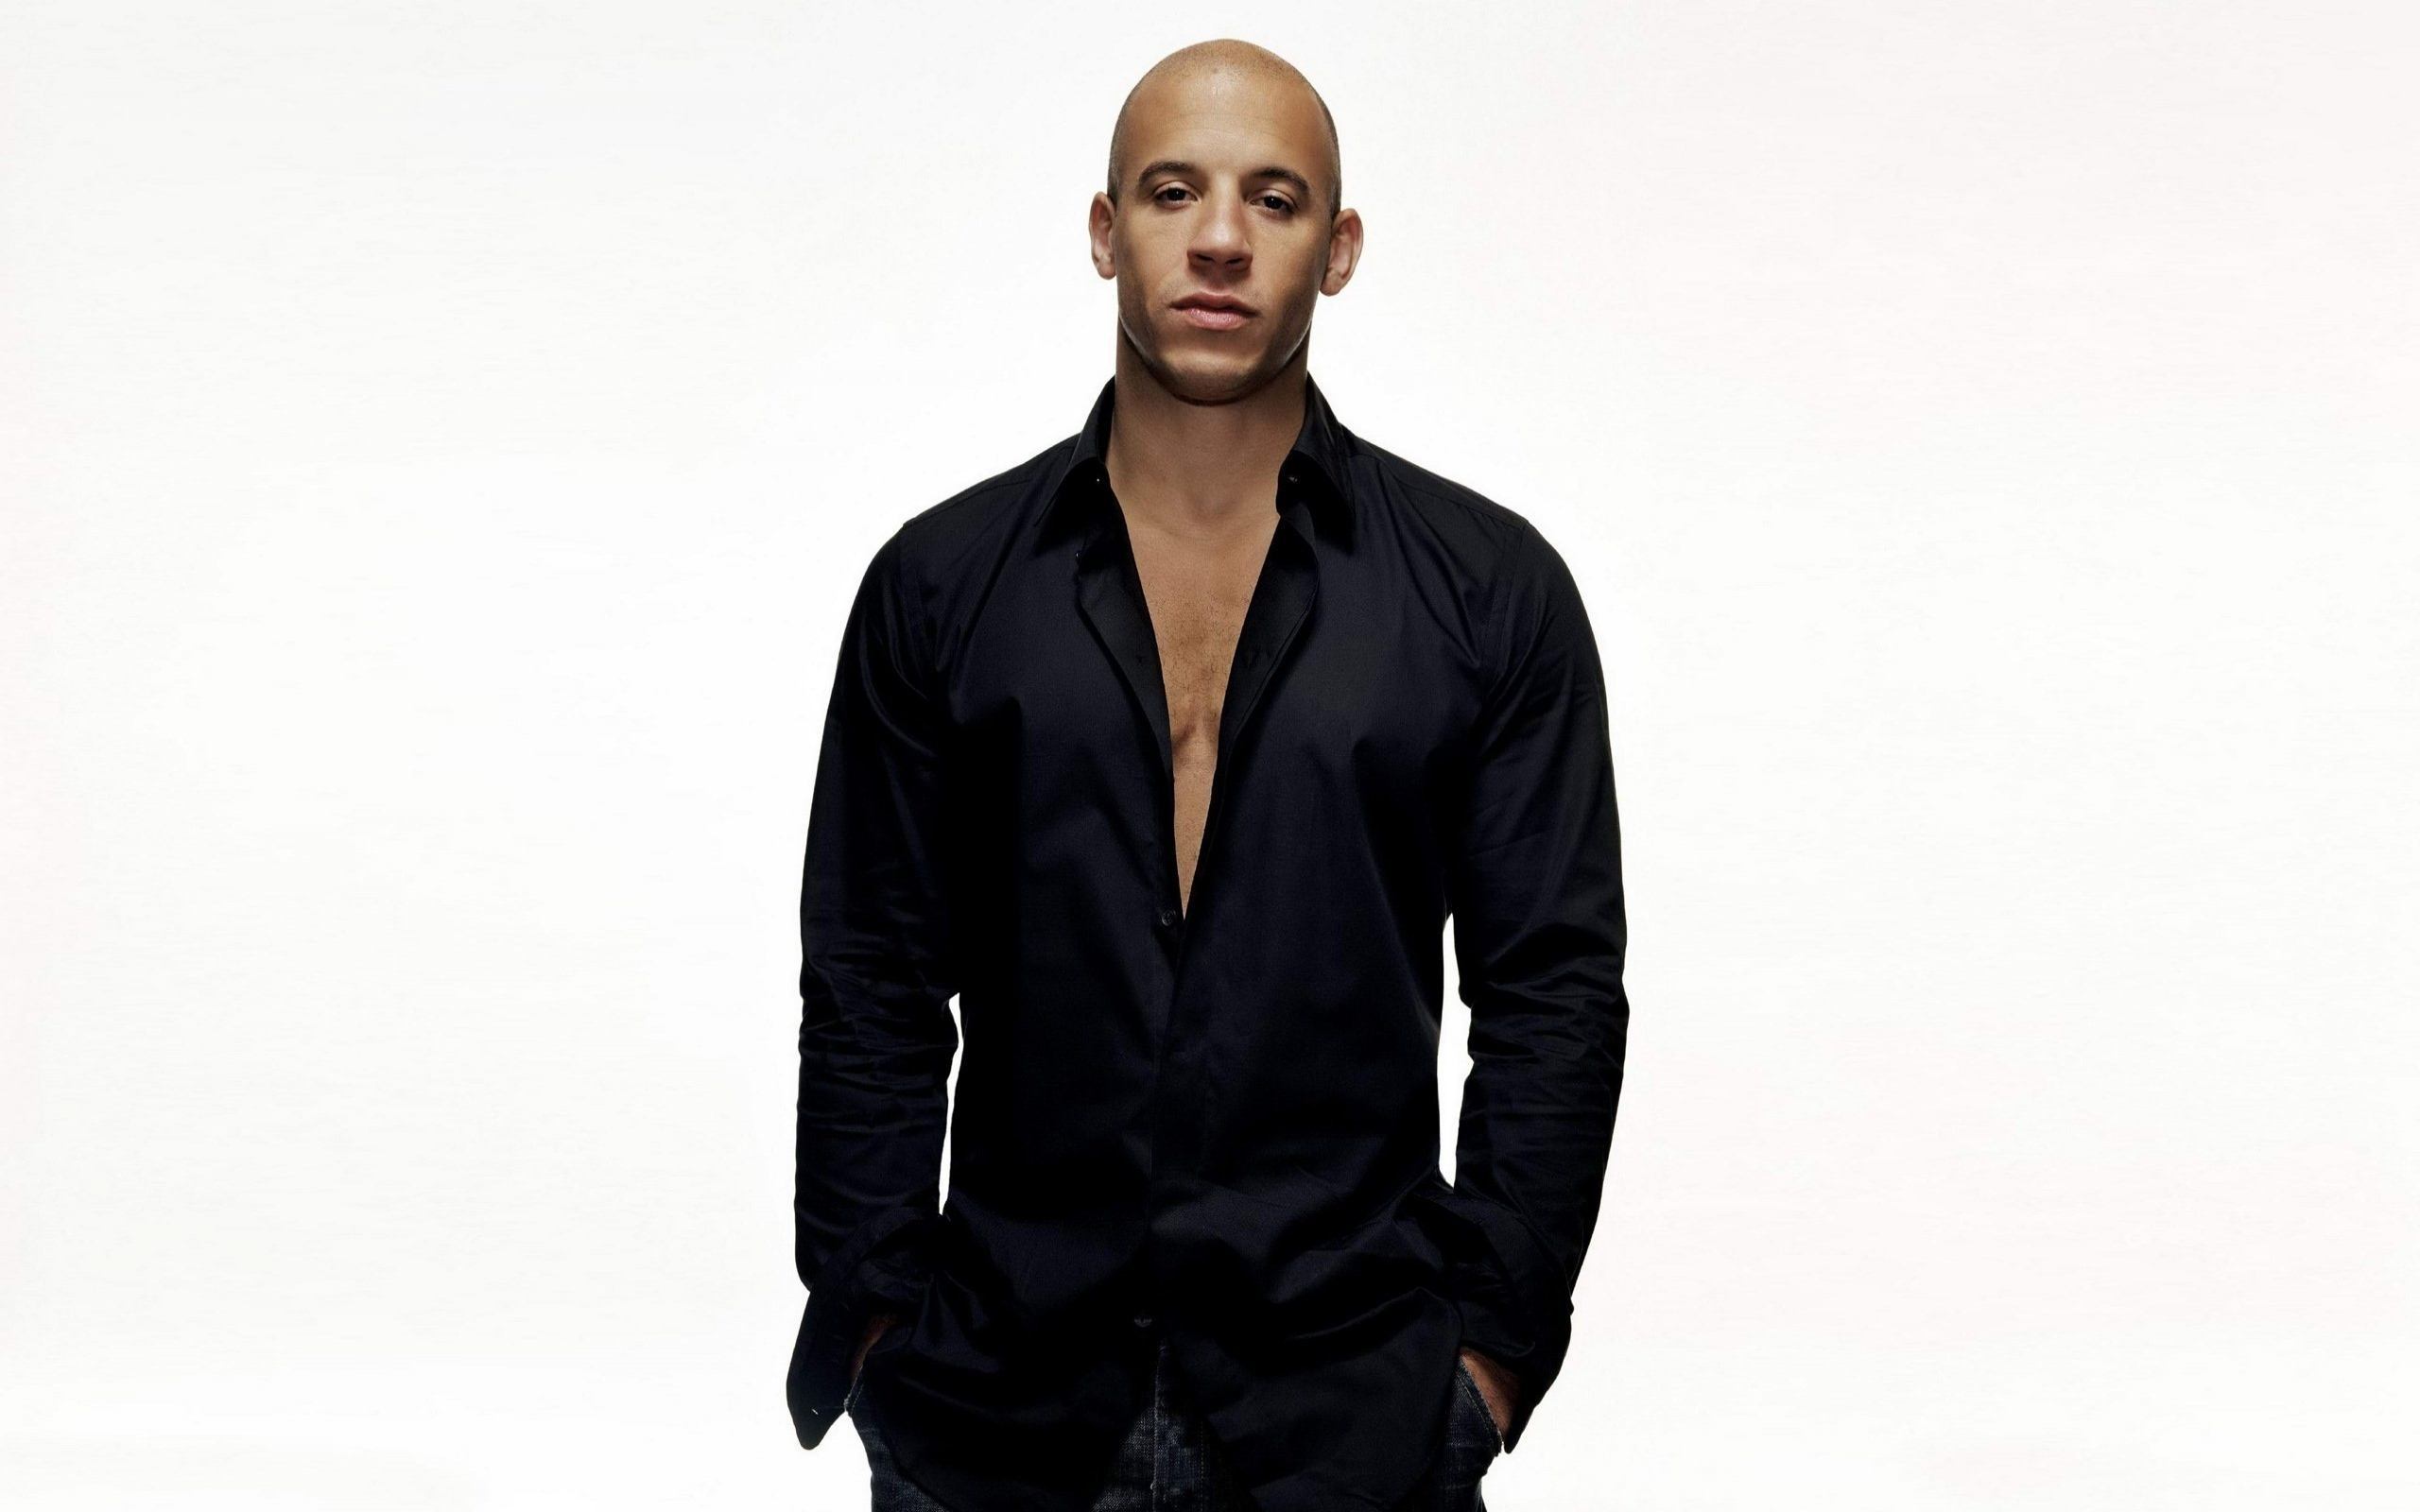 People 2560x1600 Vin Diesel actor black shirt frontal view simple background men studio